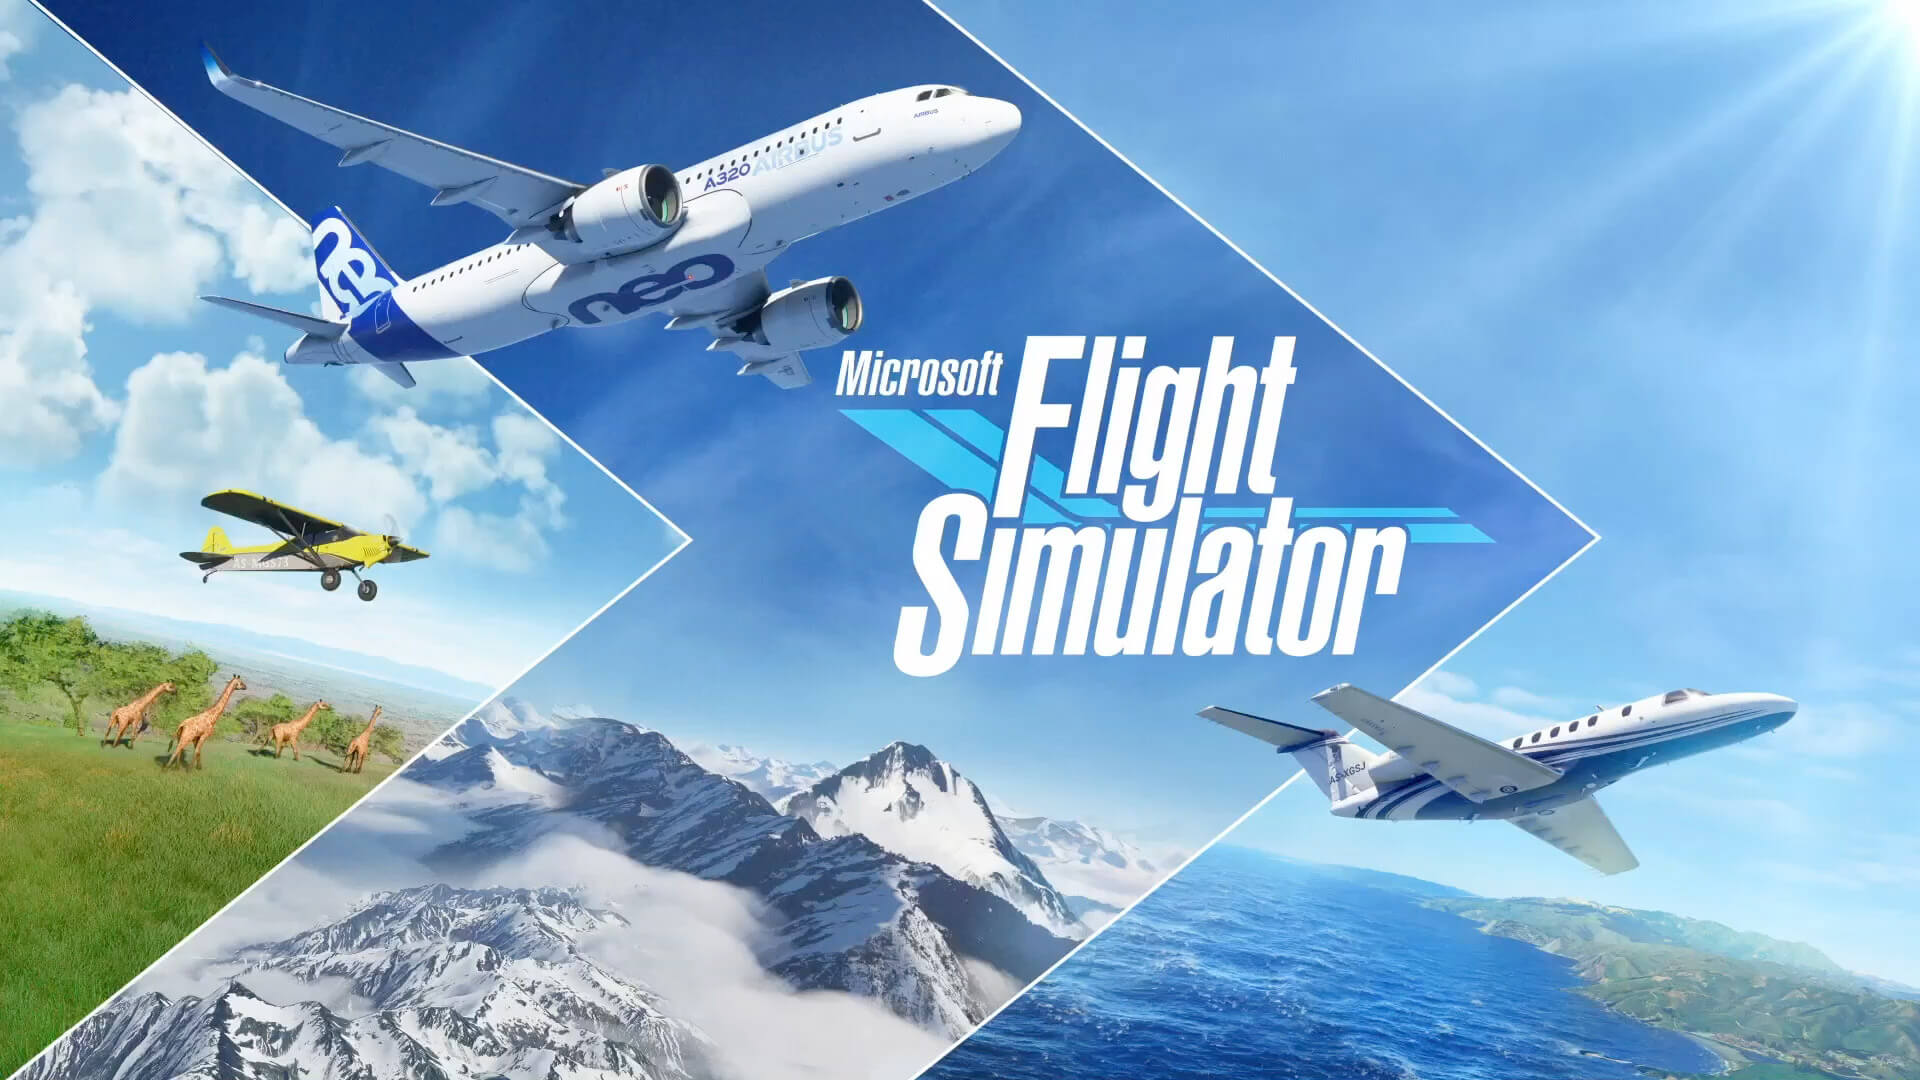 microsoft-flight-simulator-se-duoc-toi-uu-hoa-hieu-nang-cuc-khung-tren-pc-ngay-trong-thang-nay